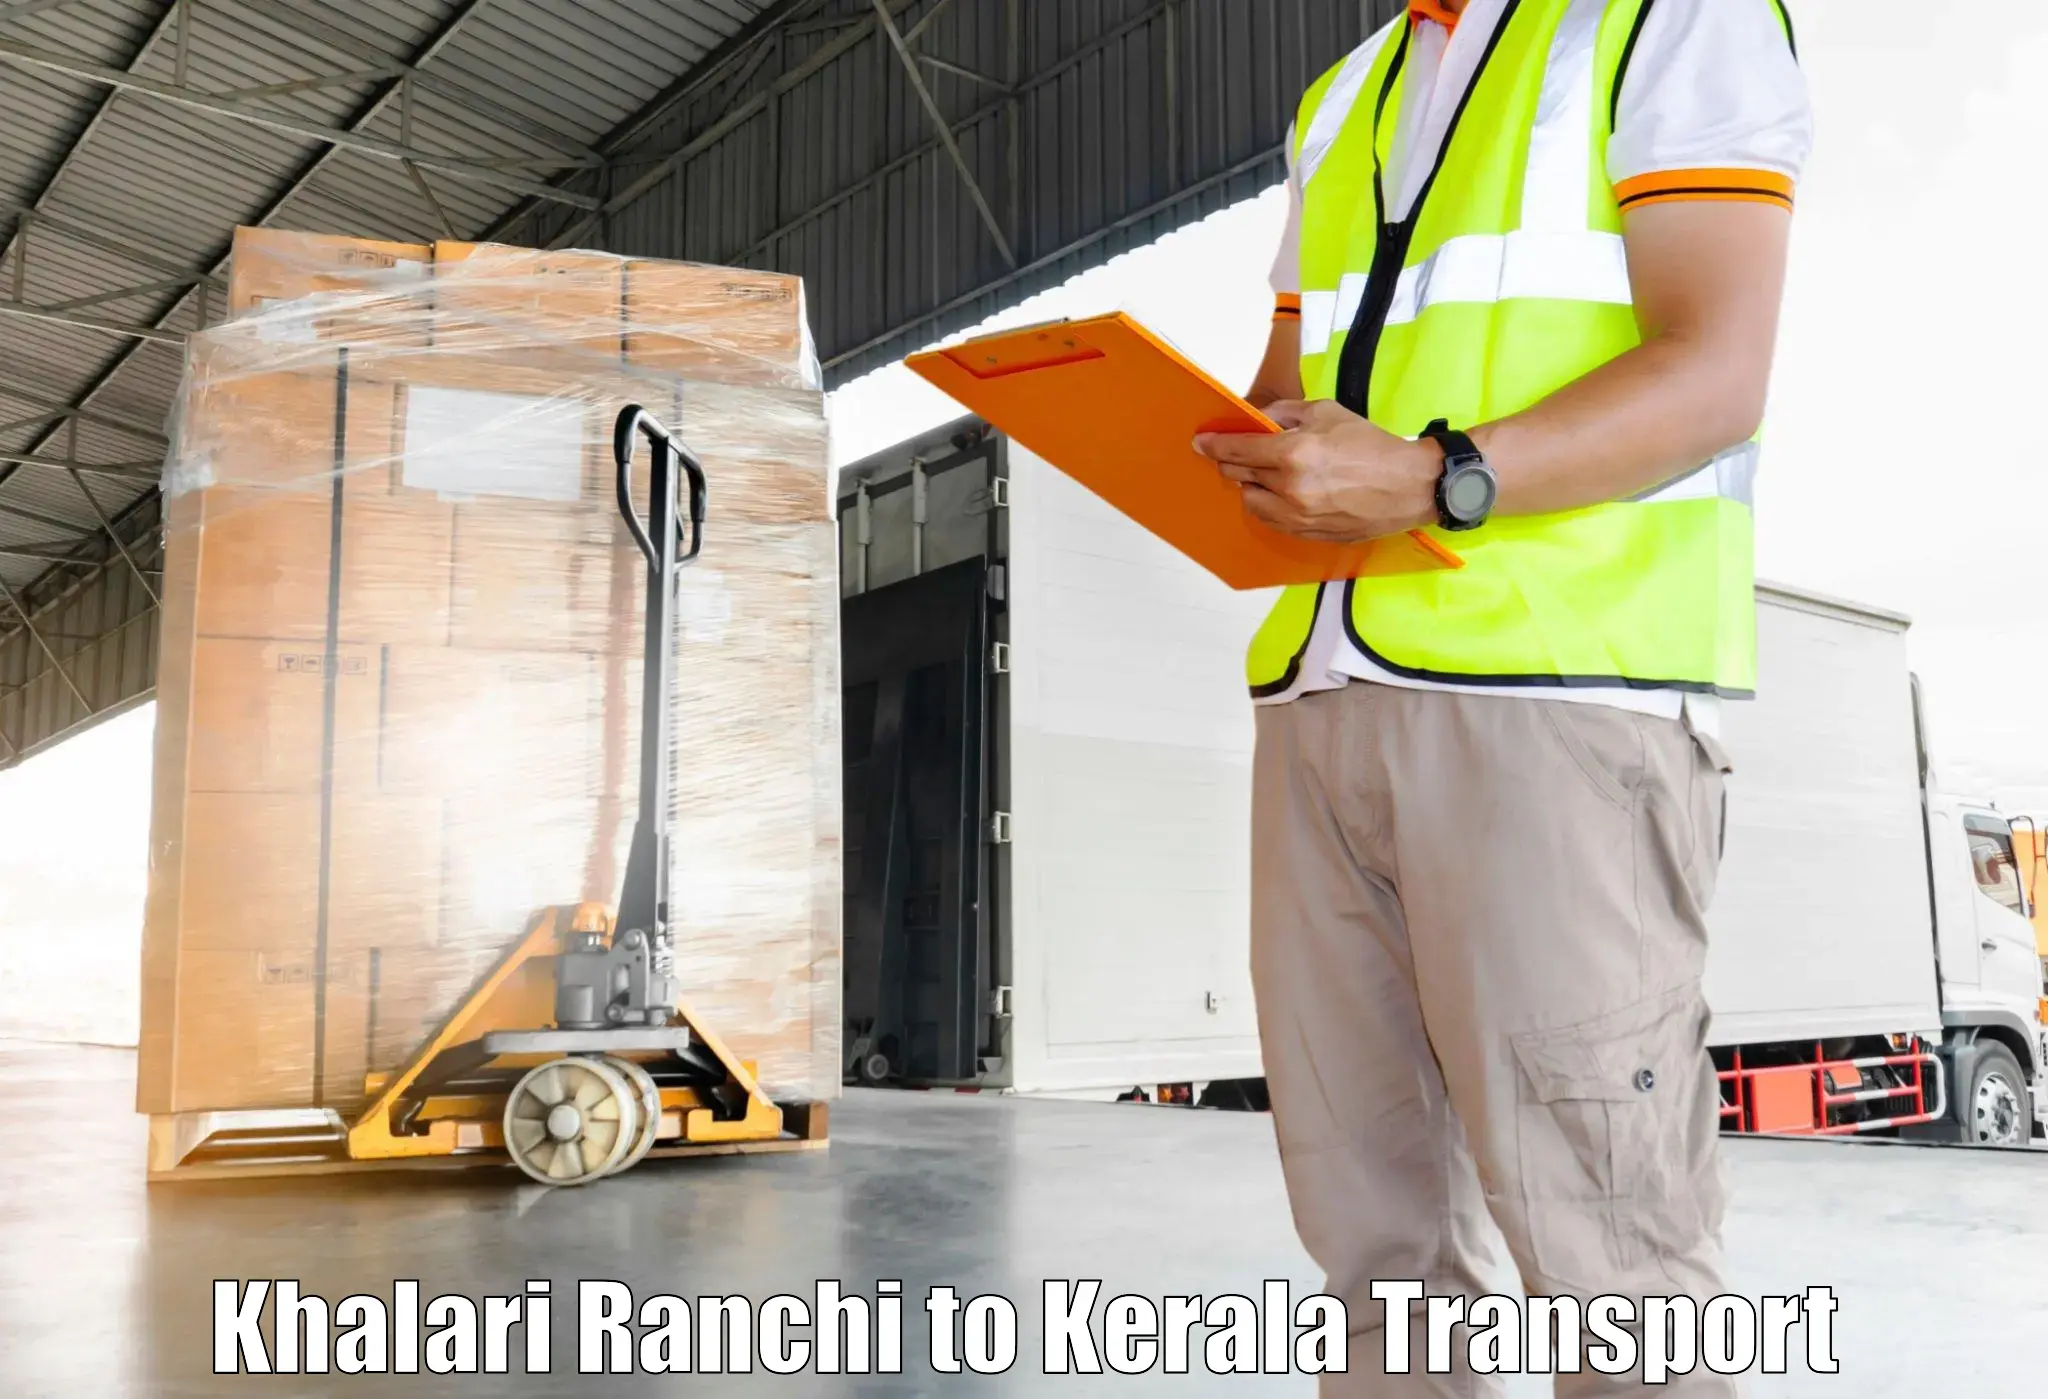 Land transport services Khalari Ranchi to Pangodu